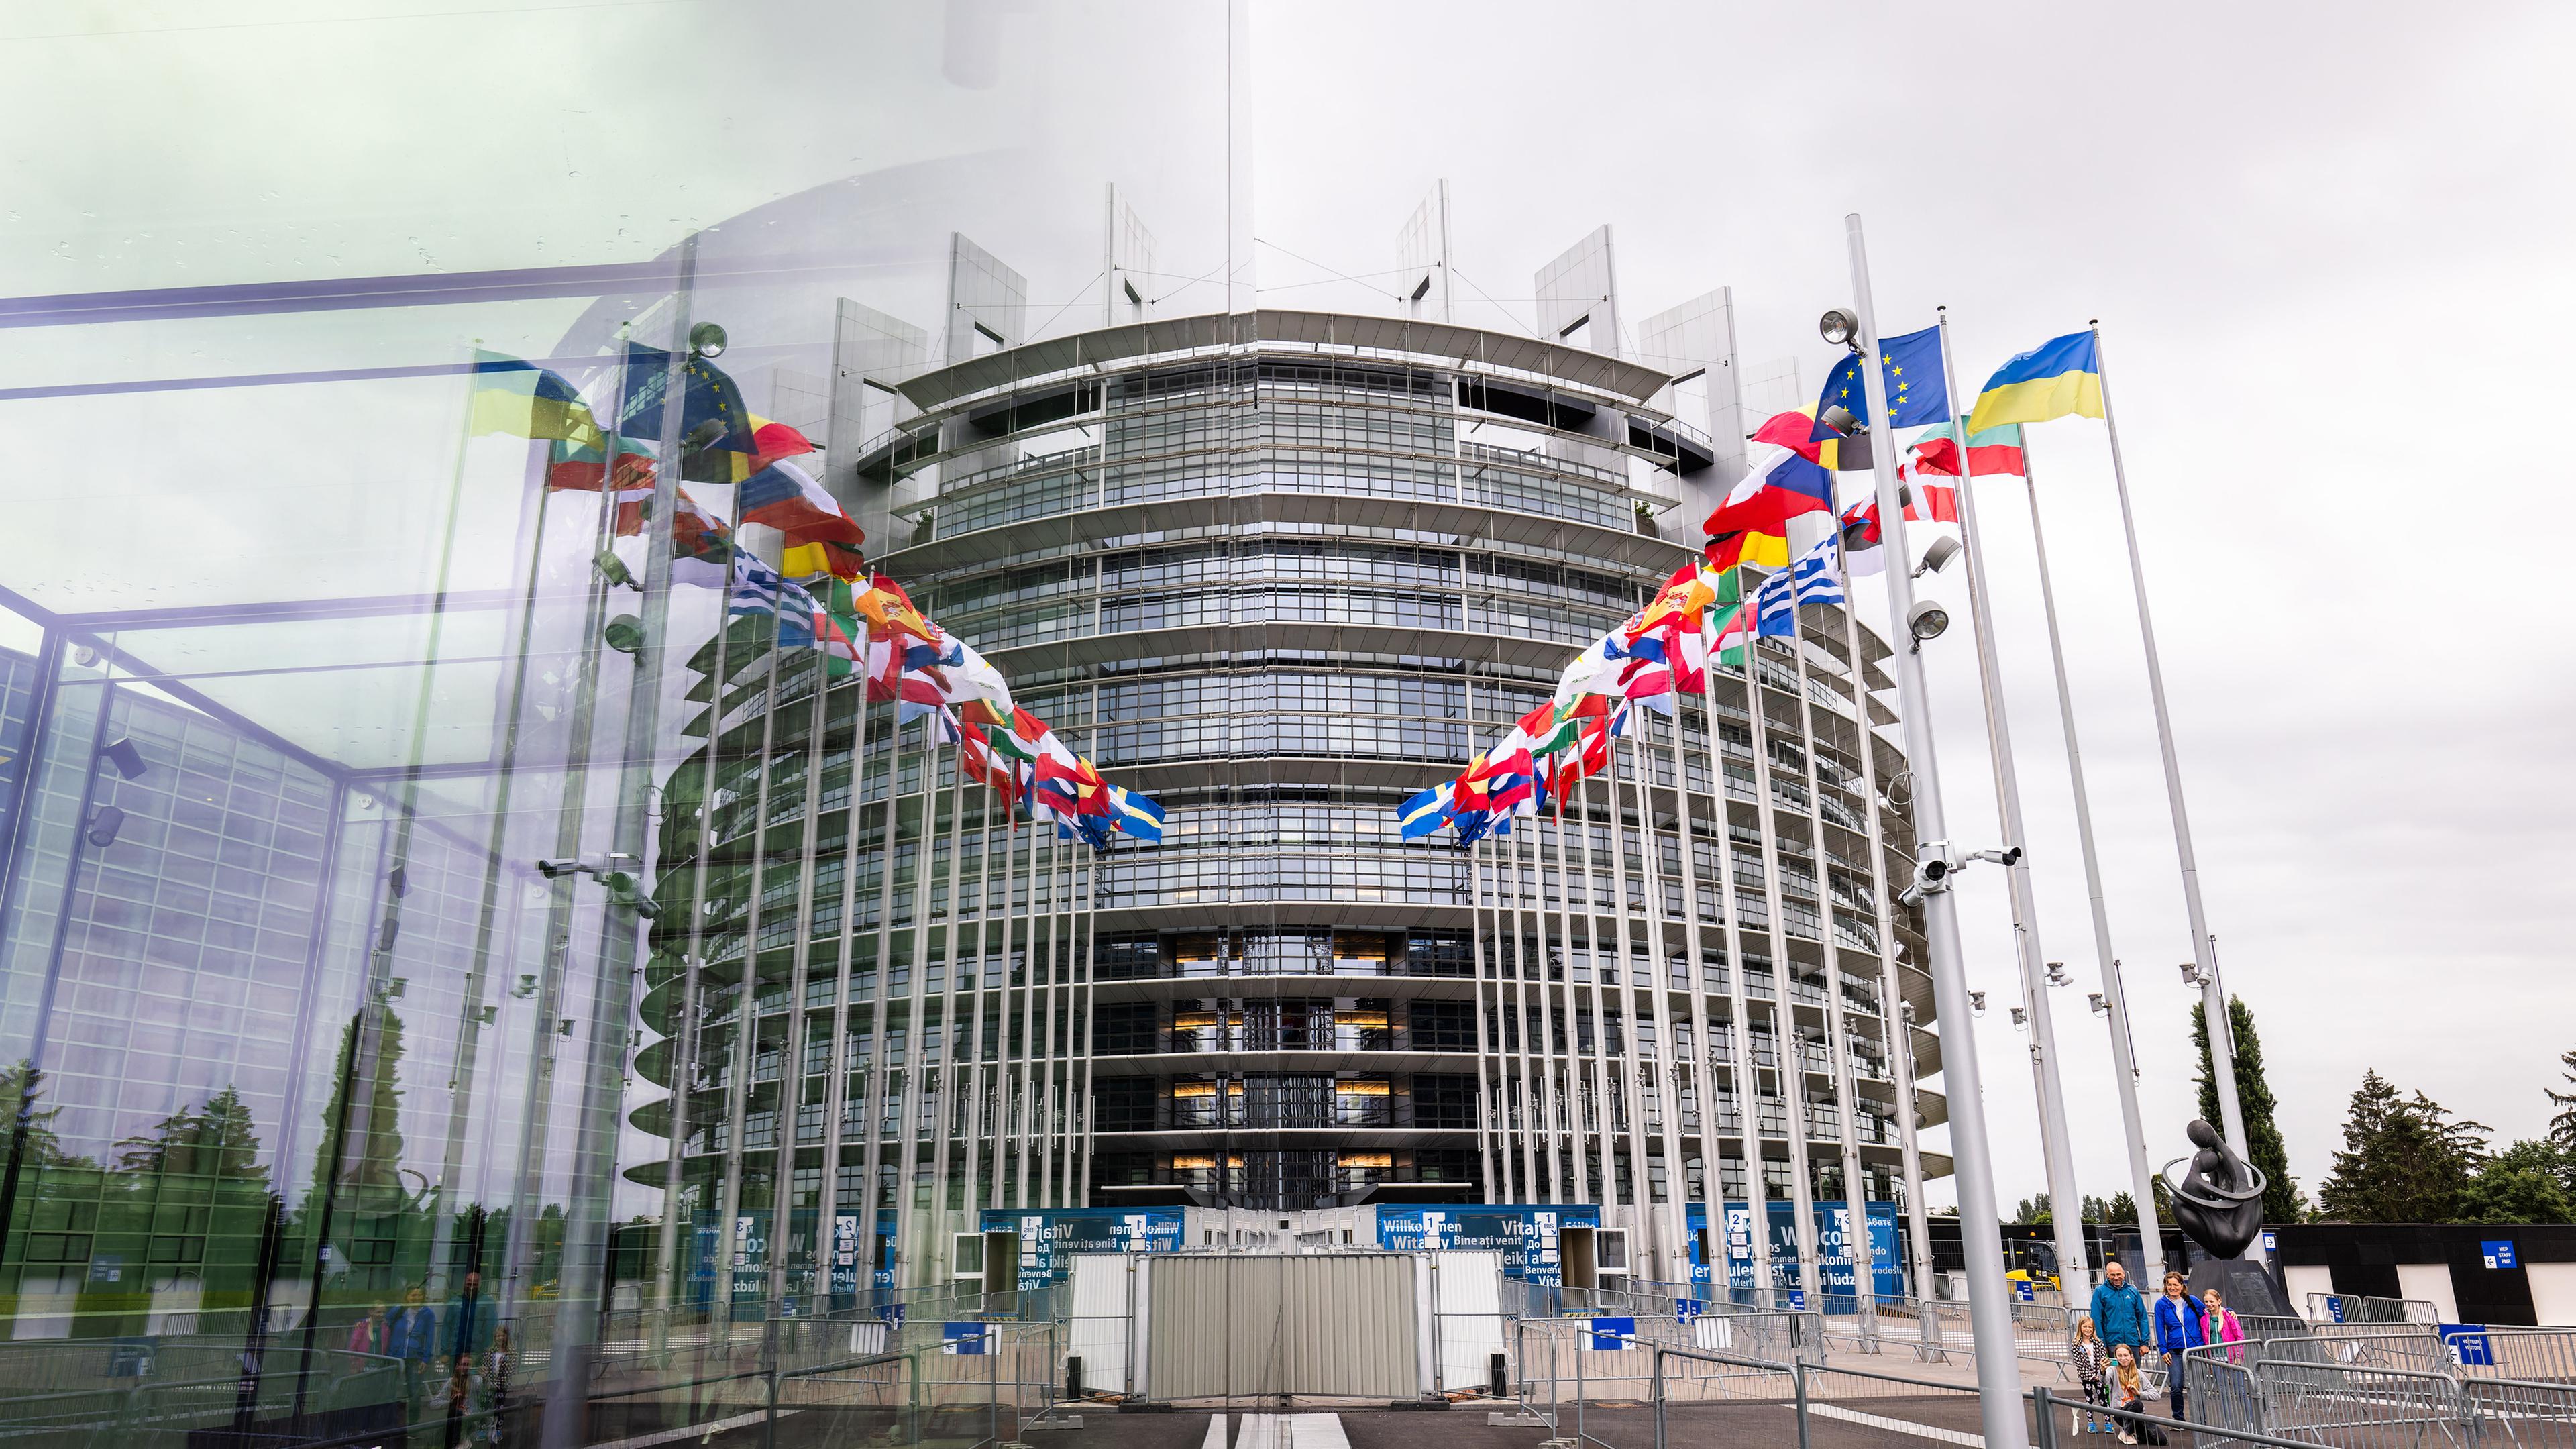 Das EU Parlament ist von außen zu sehen. Vor dem runden Gebäude sind alle Nationalflaggen aufgestellt.